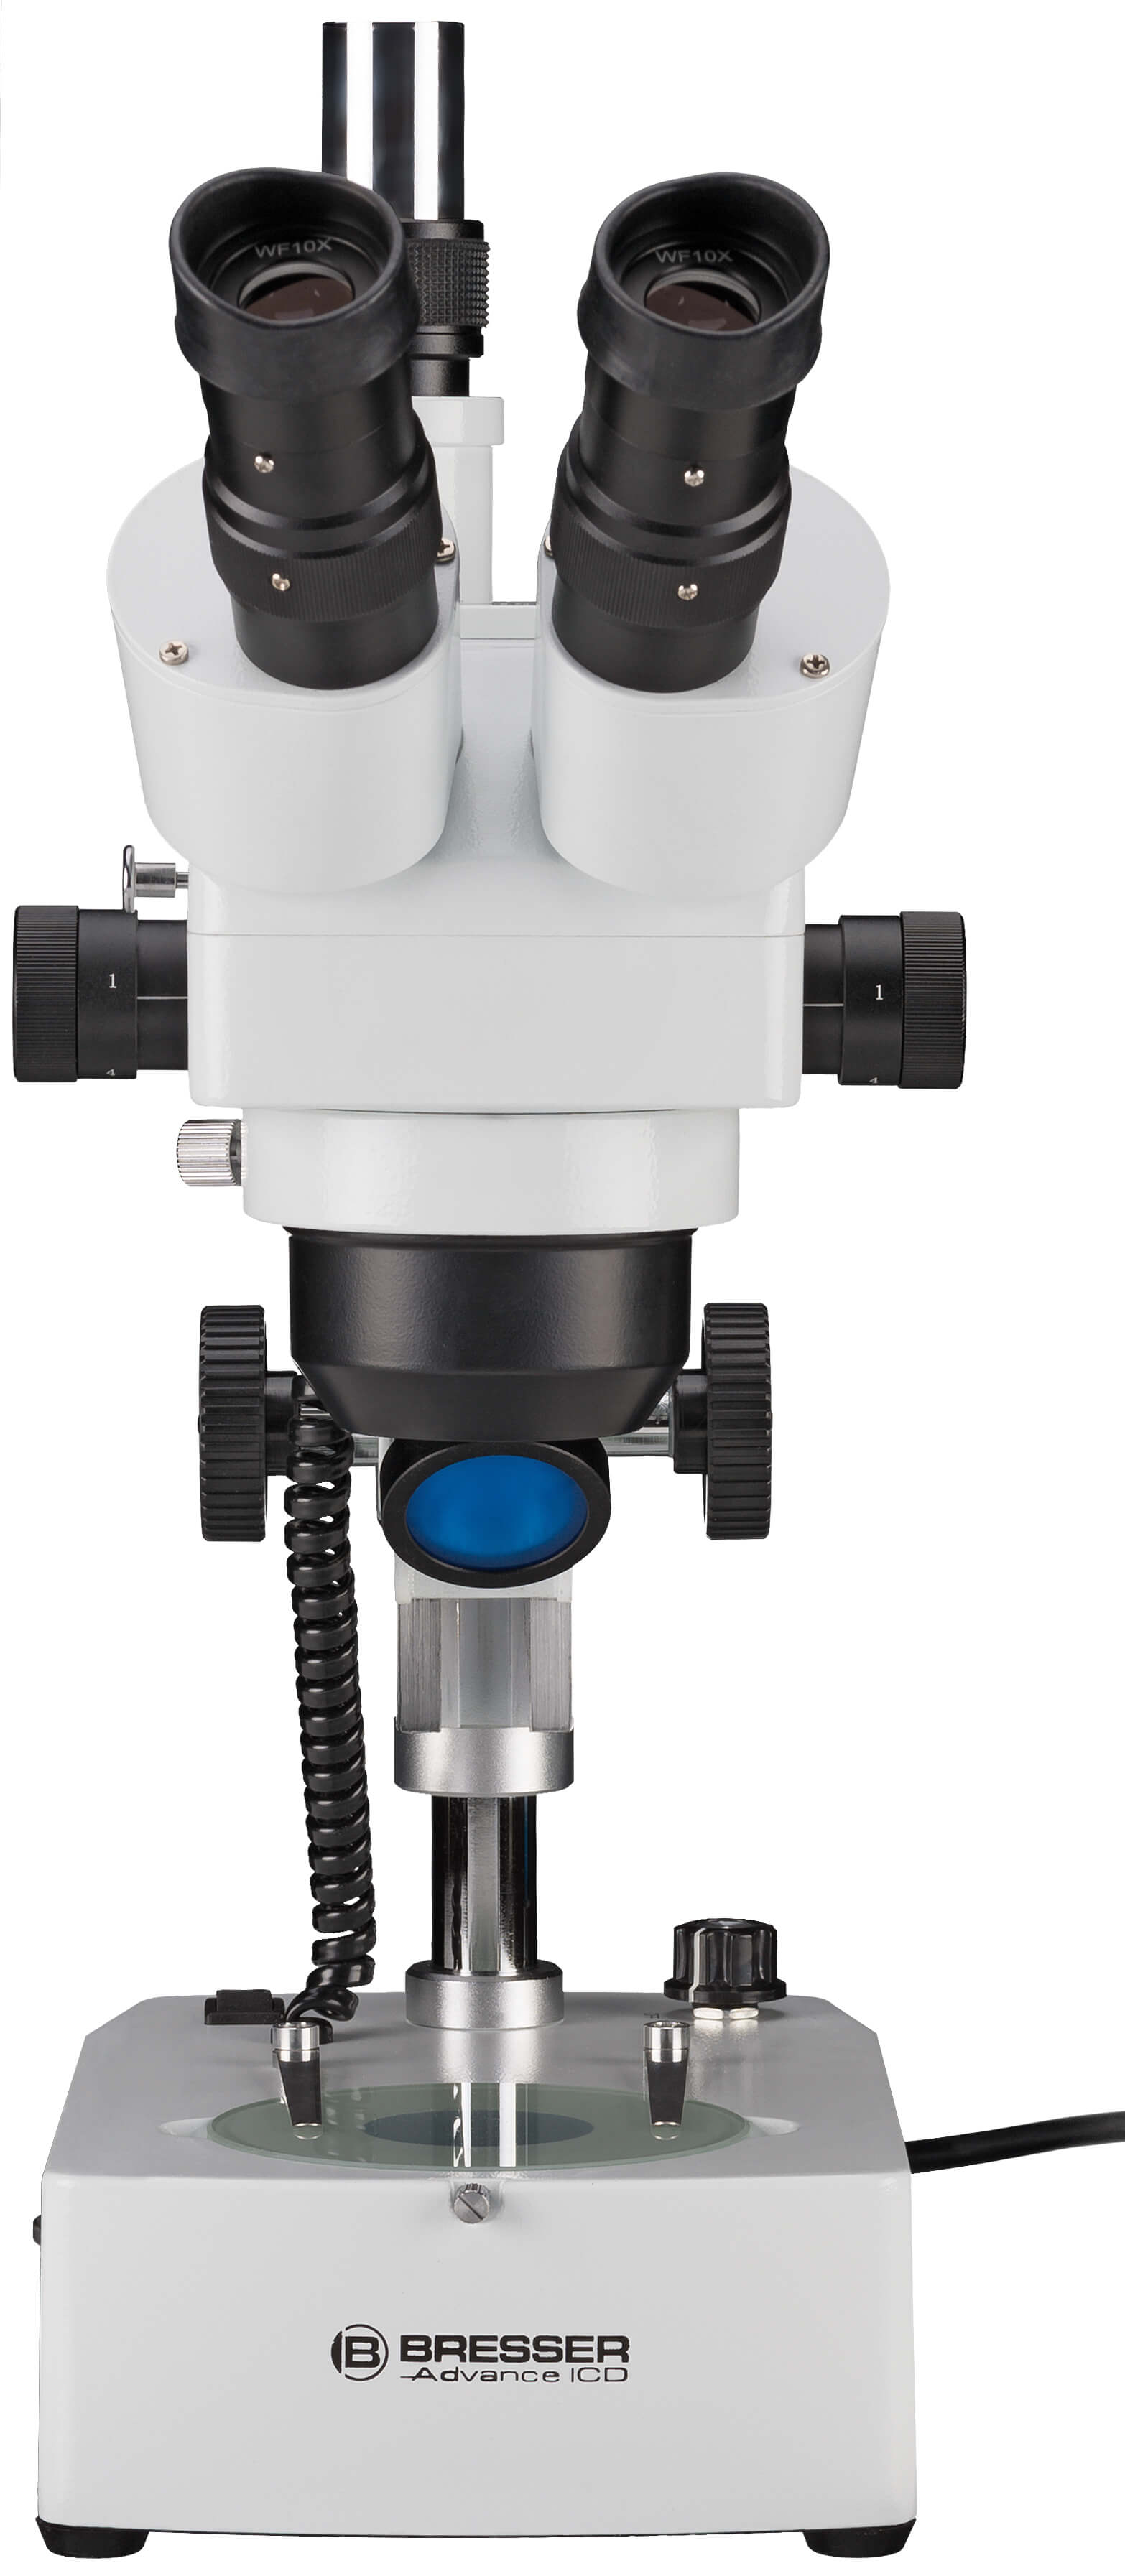 Stereoskopický mikroskop Bresser Advance ICD 10x-160x